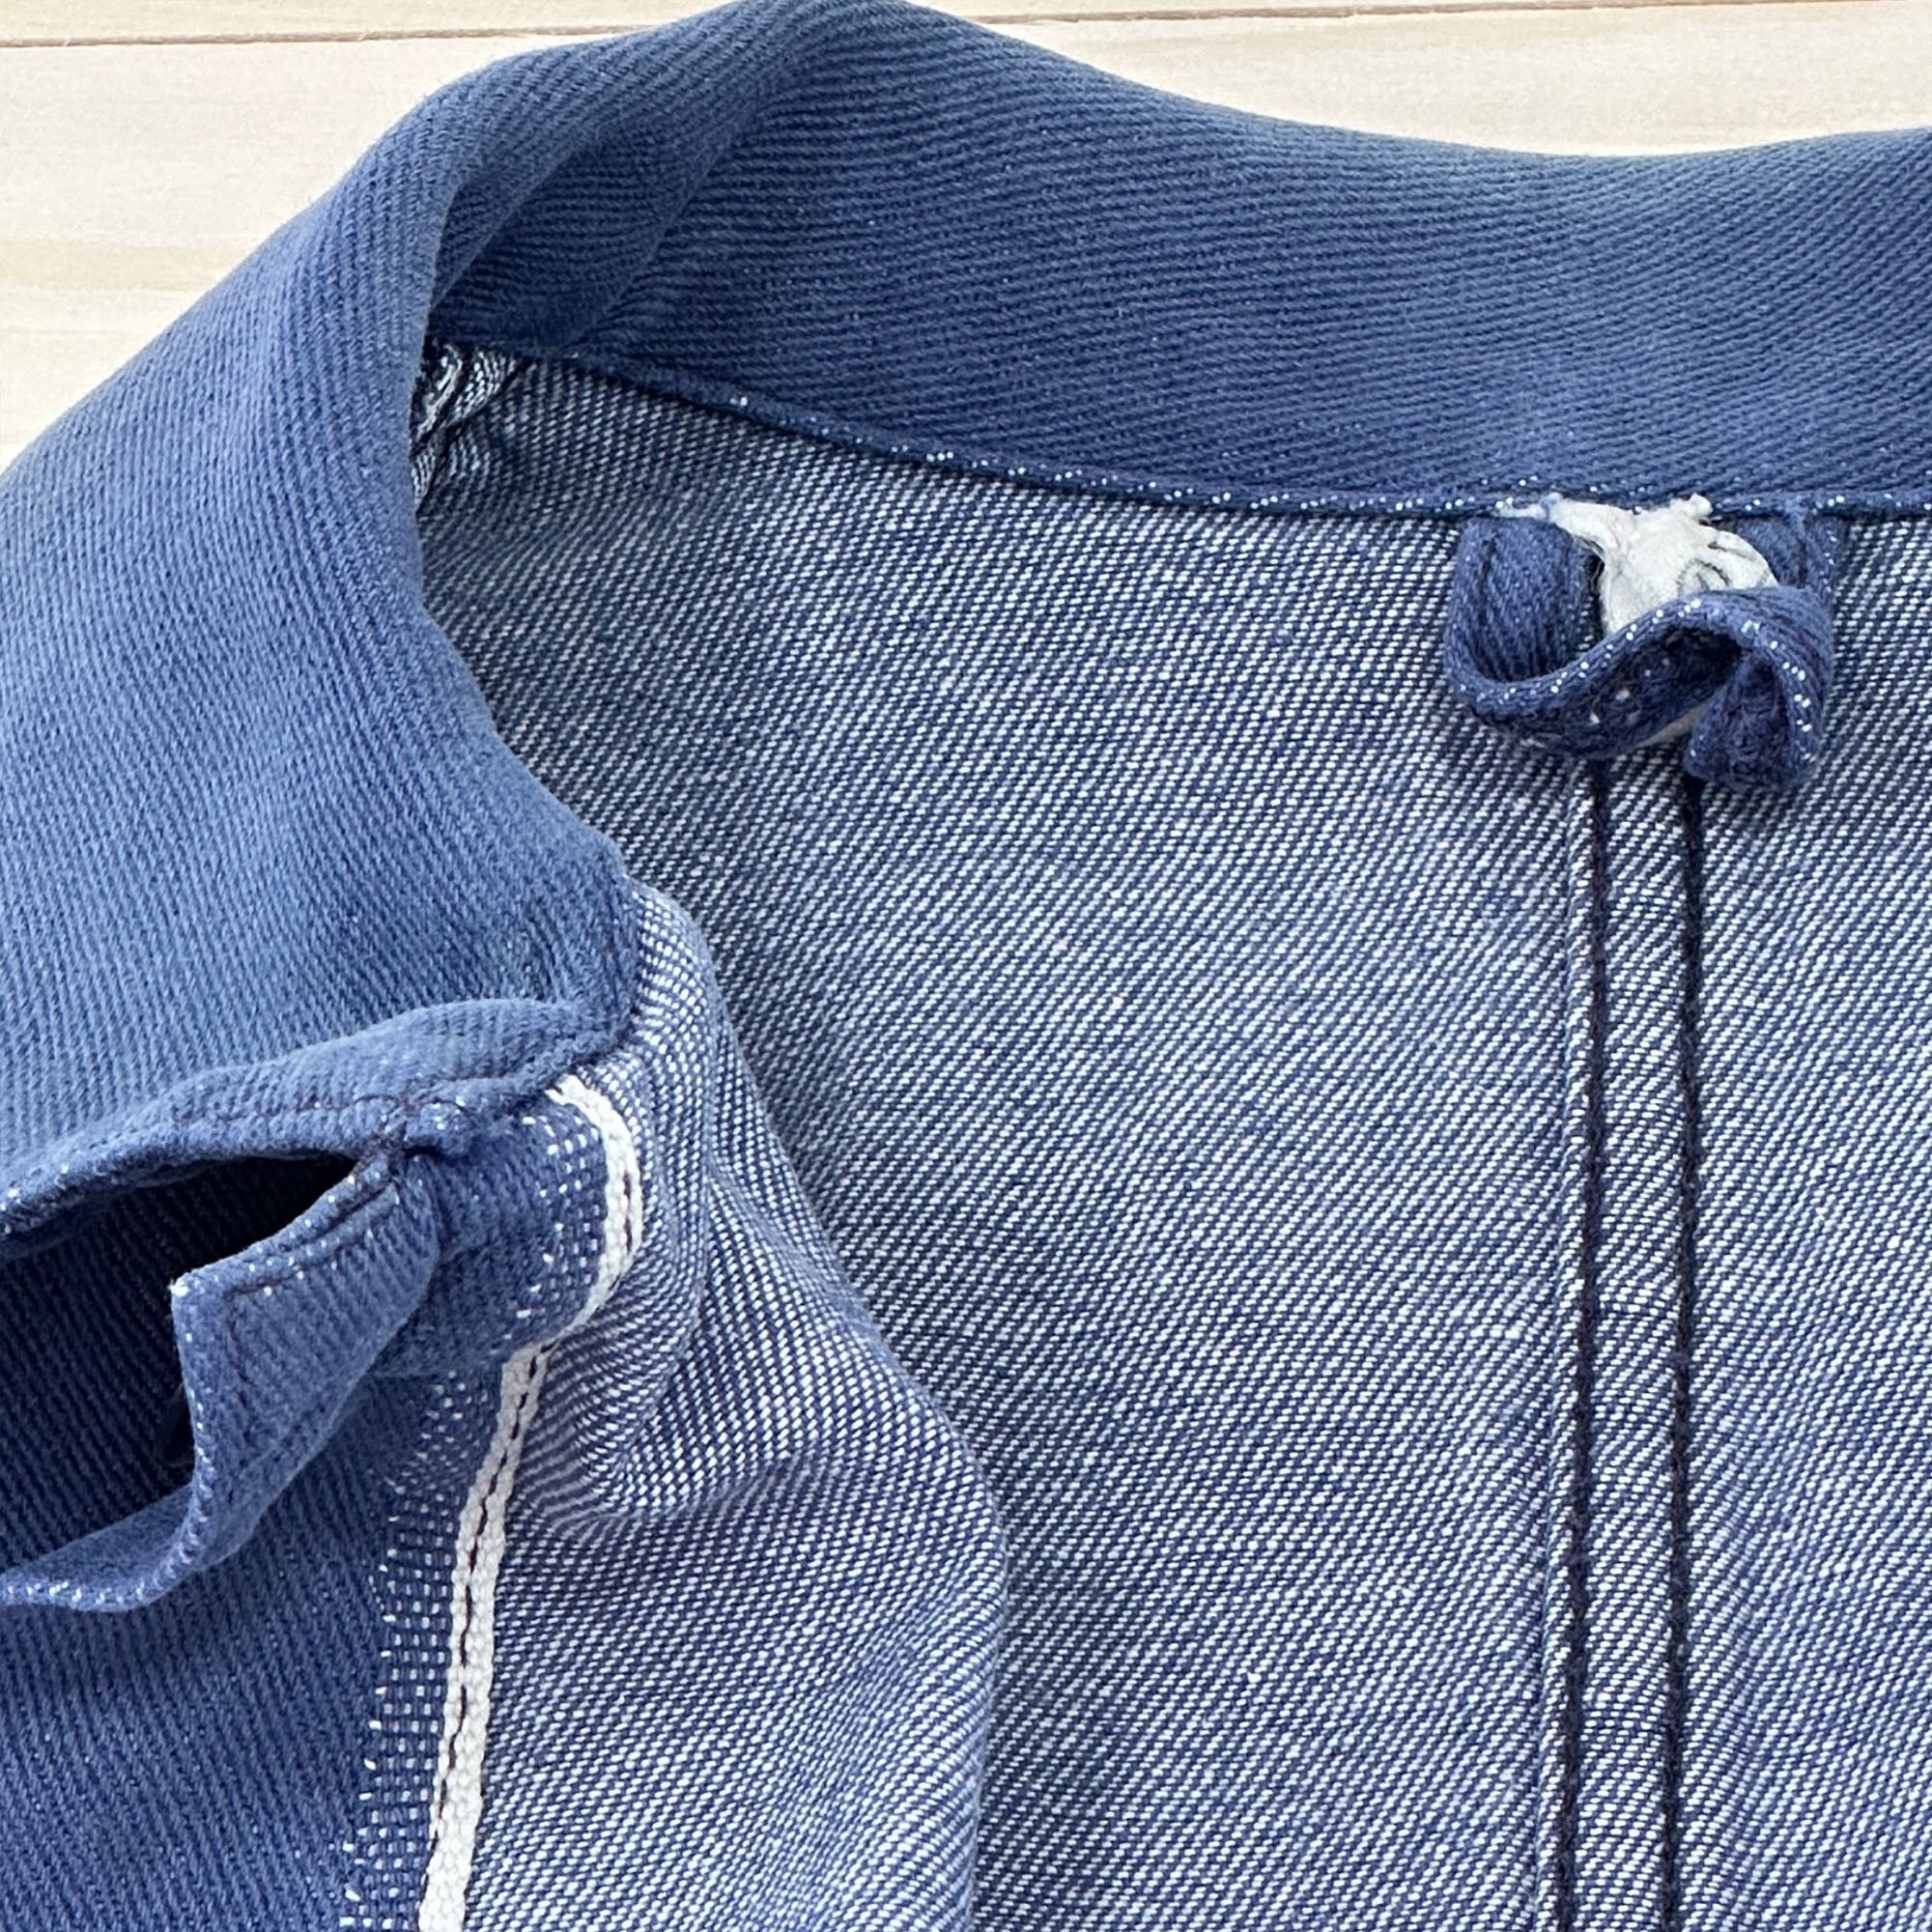 Distressed Vintage Krähe Blue Work Jacket - Women's Medium - 0